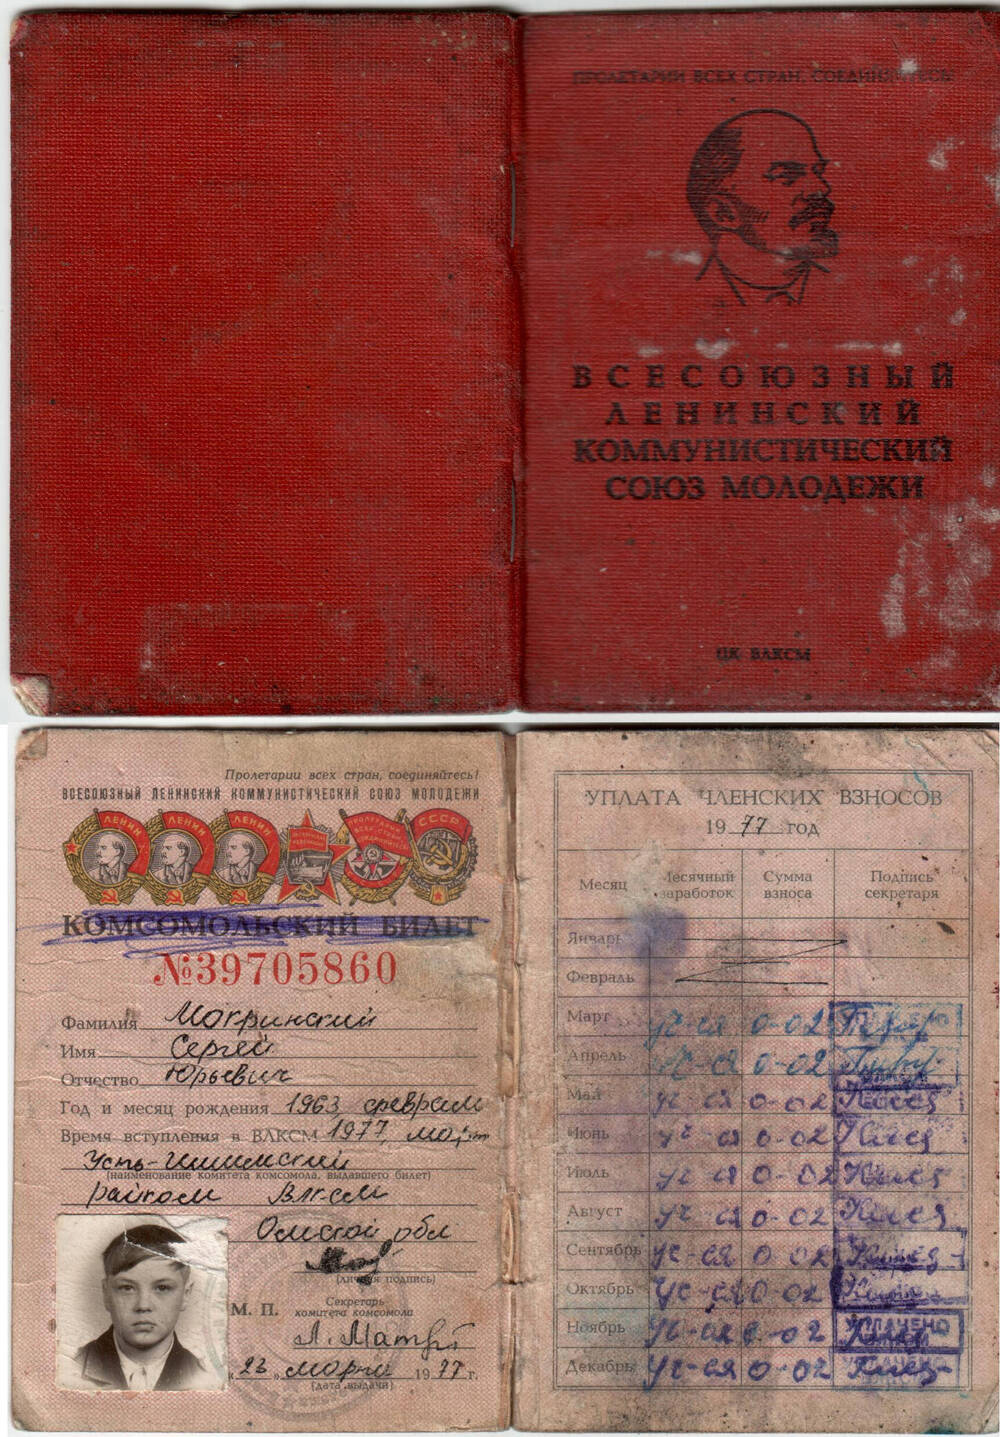 Комсомольский билет Мокринского Сергея Юрьевича